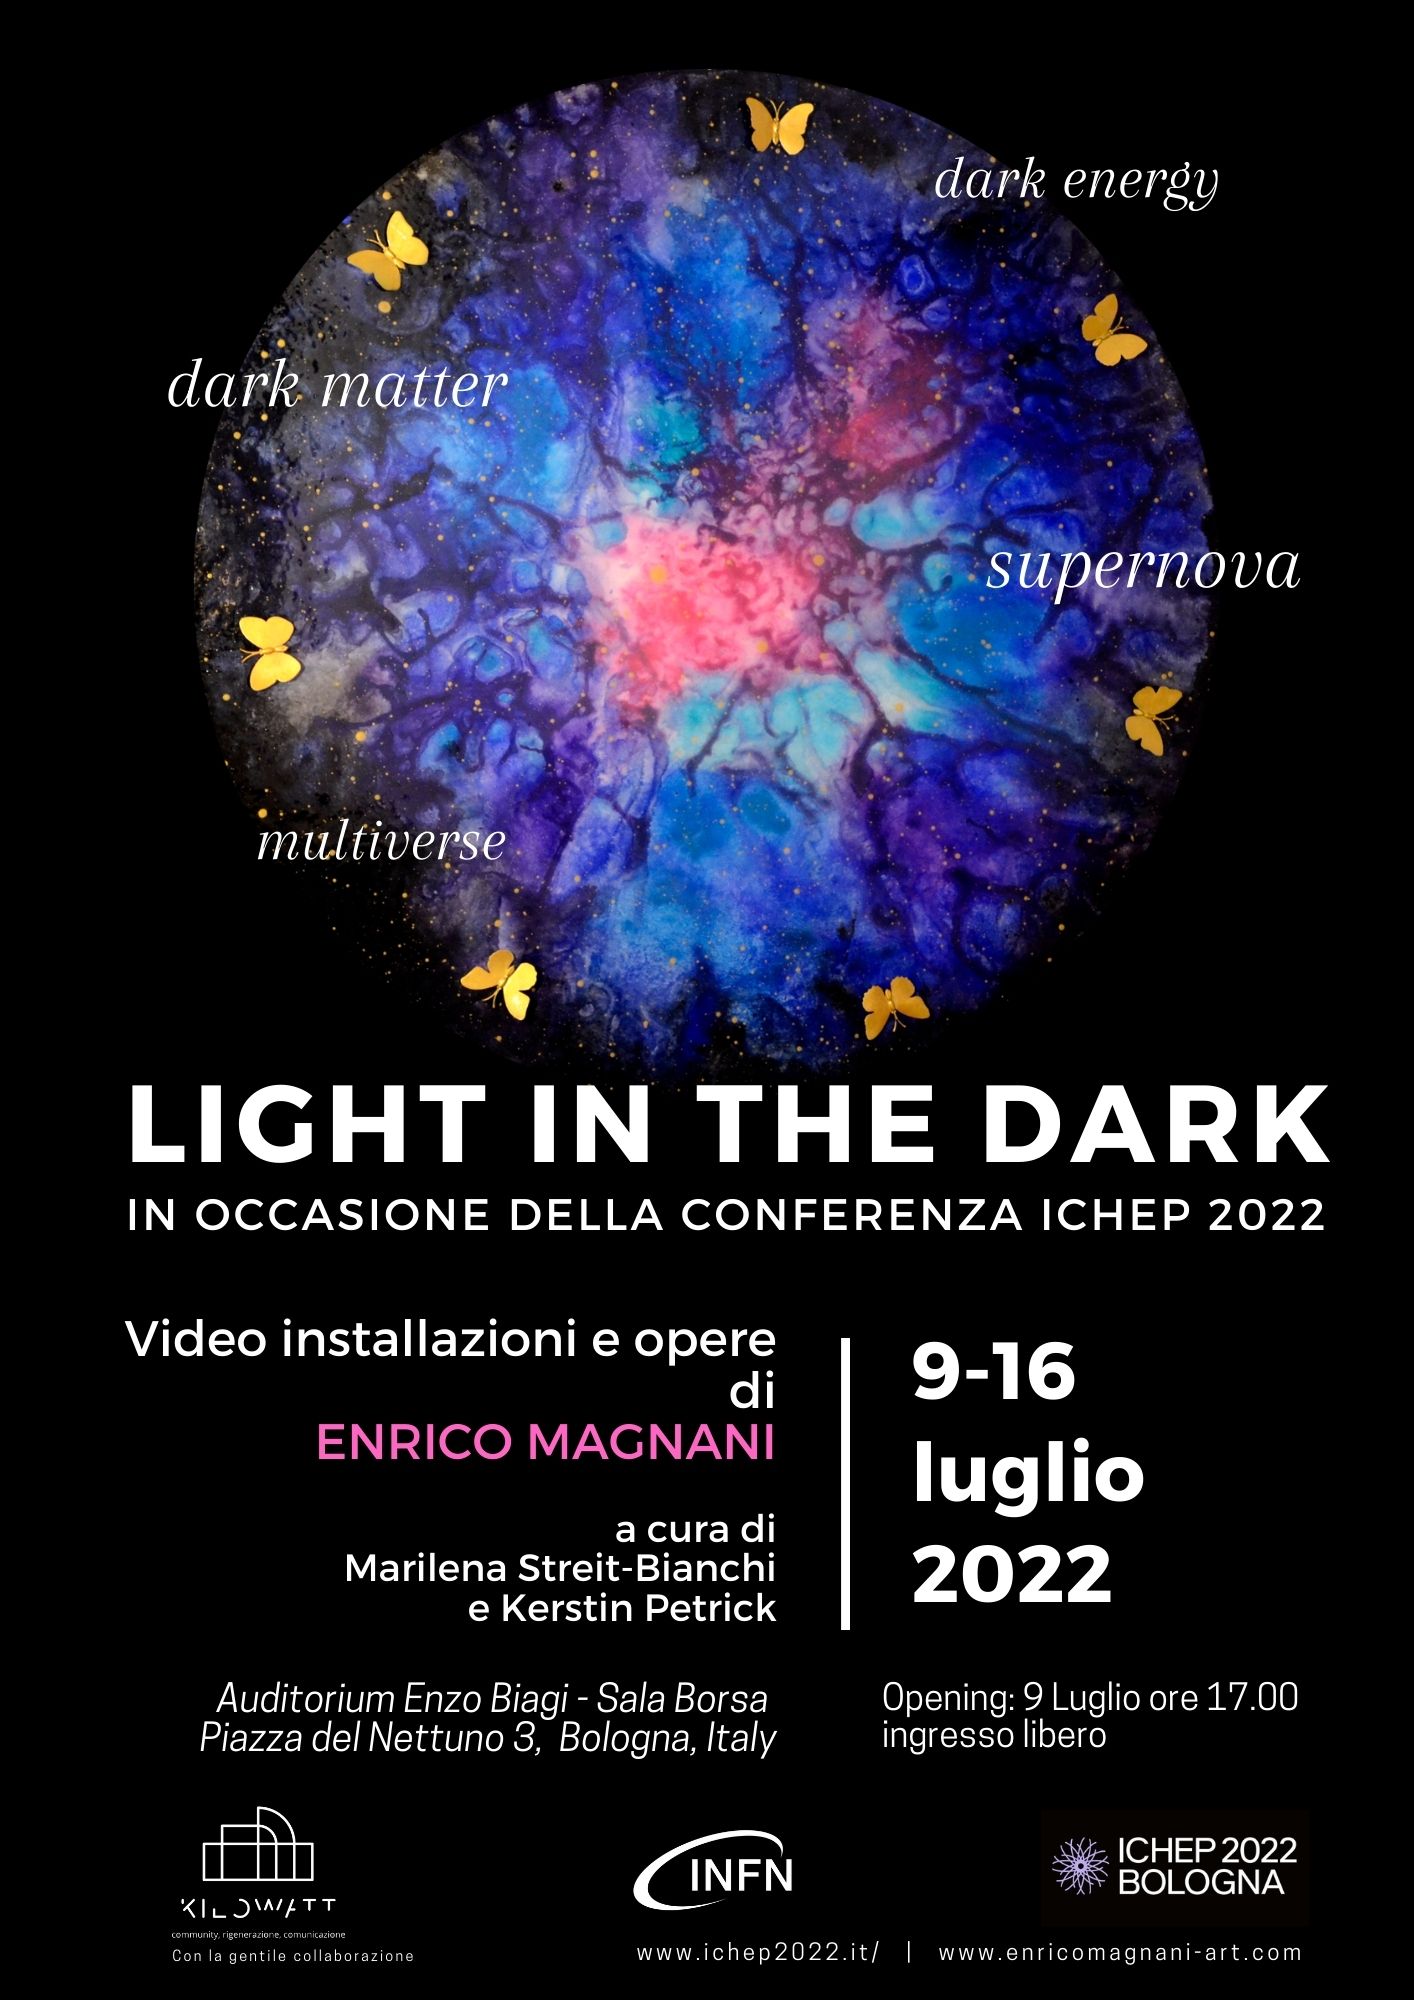 Enrico Magnani, ichep, art, science, supernova, dark matter, dark energy, multiverse